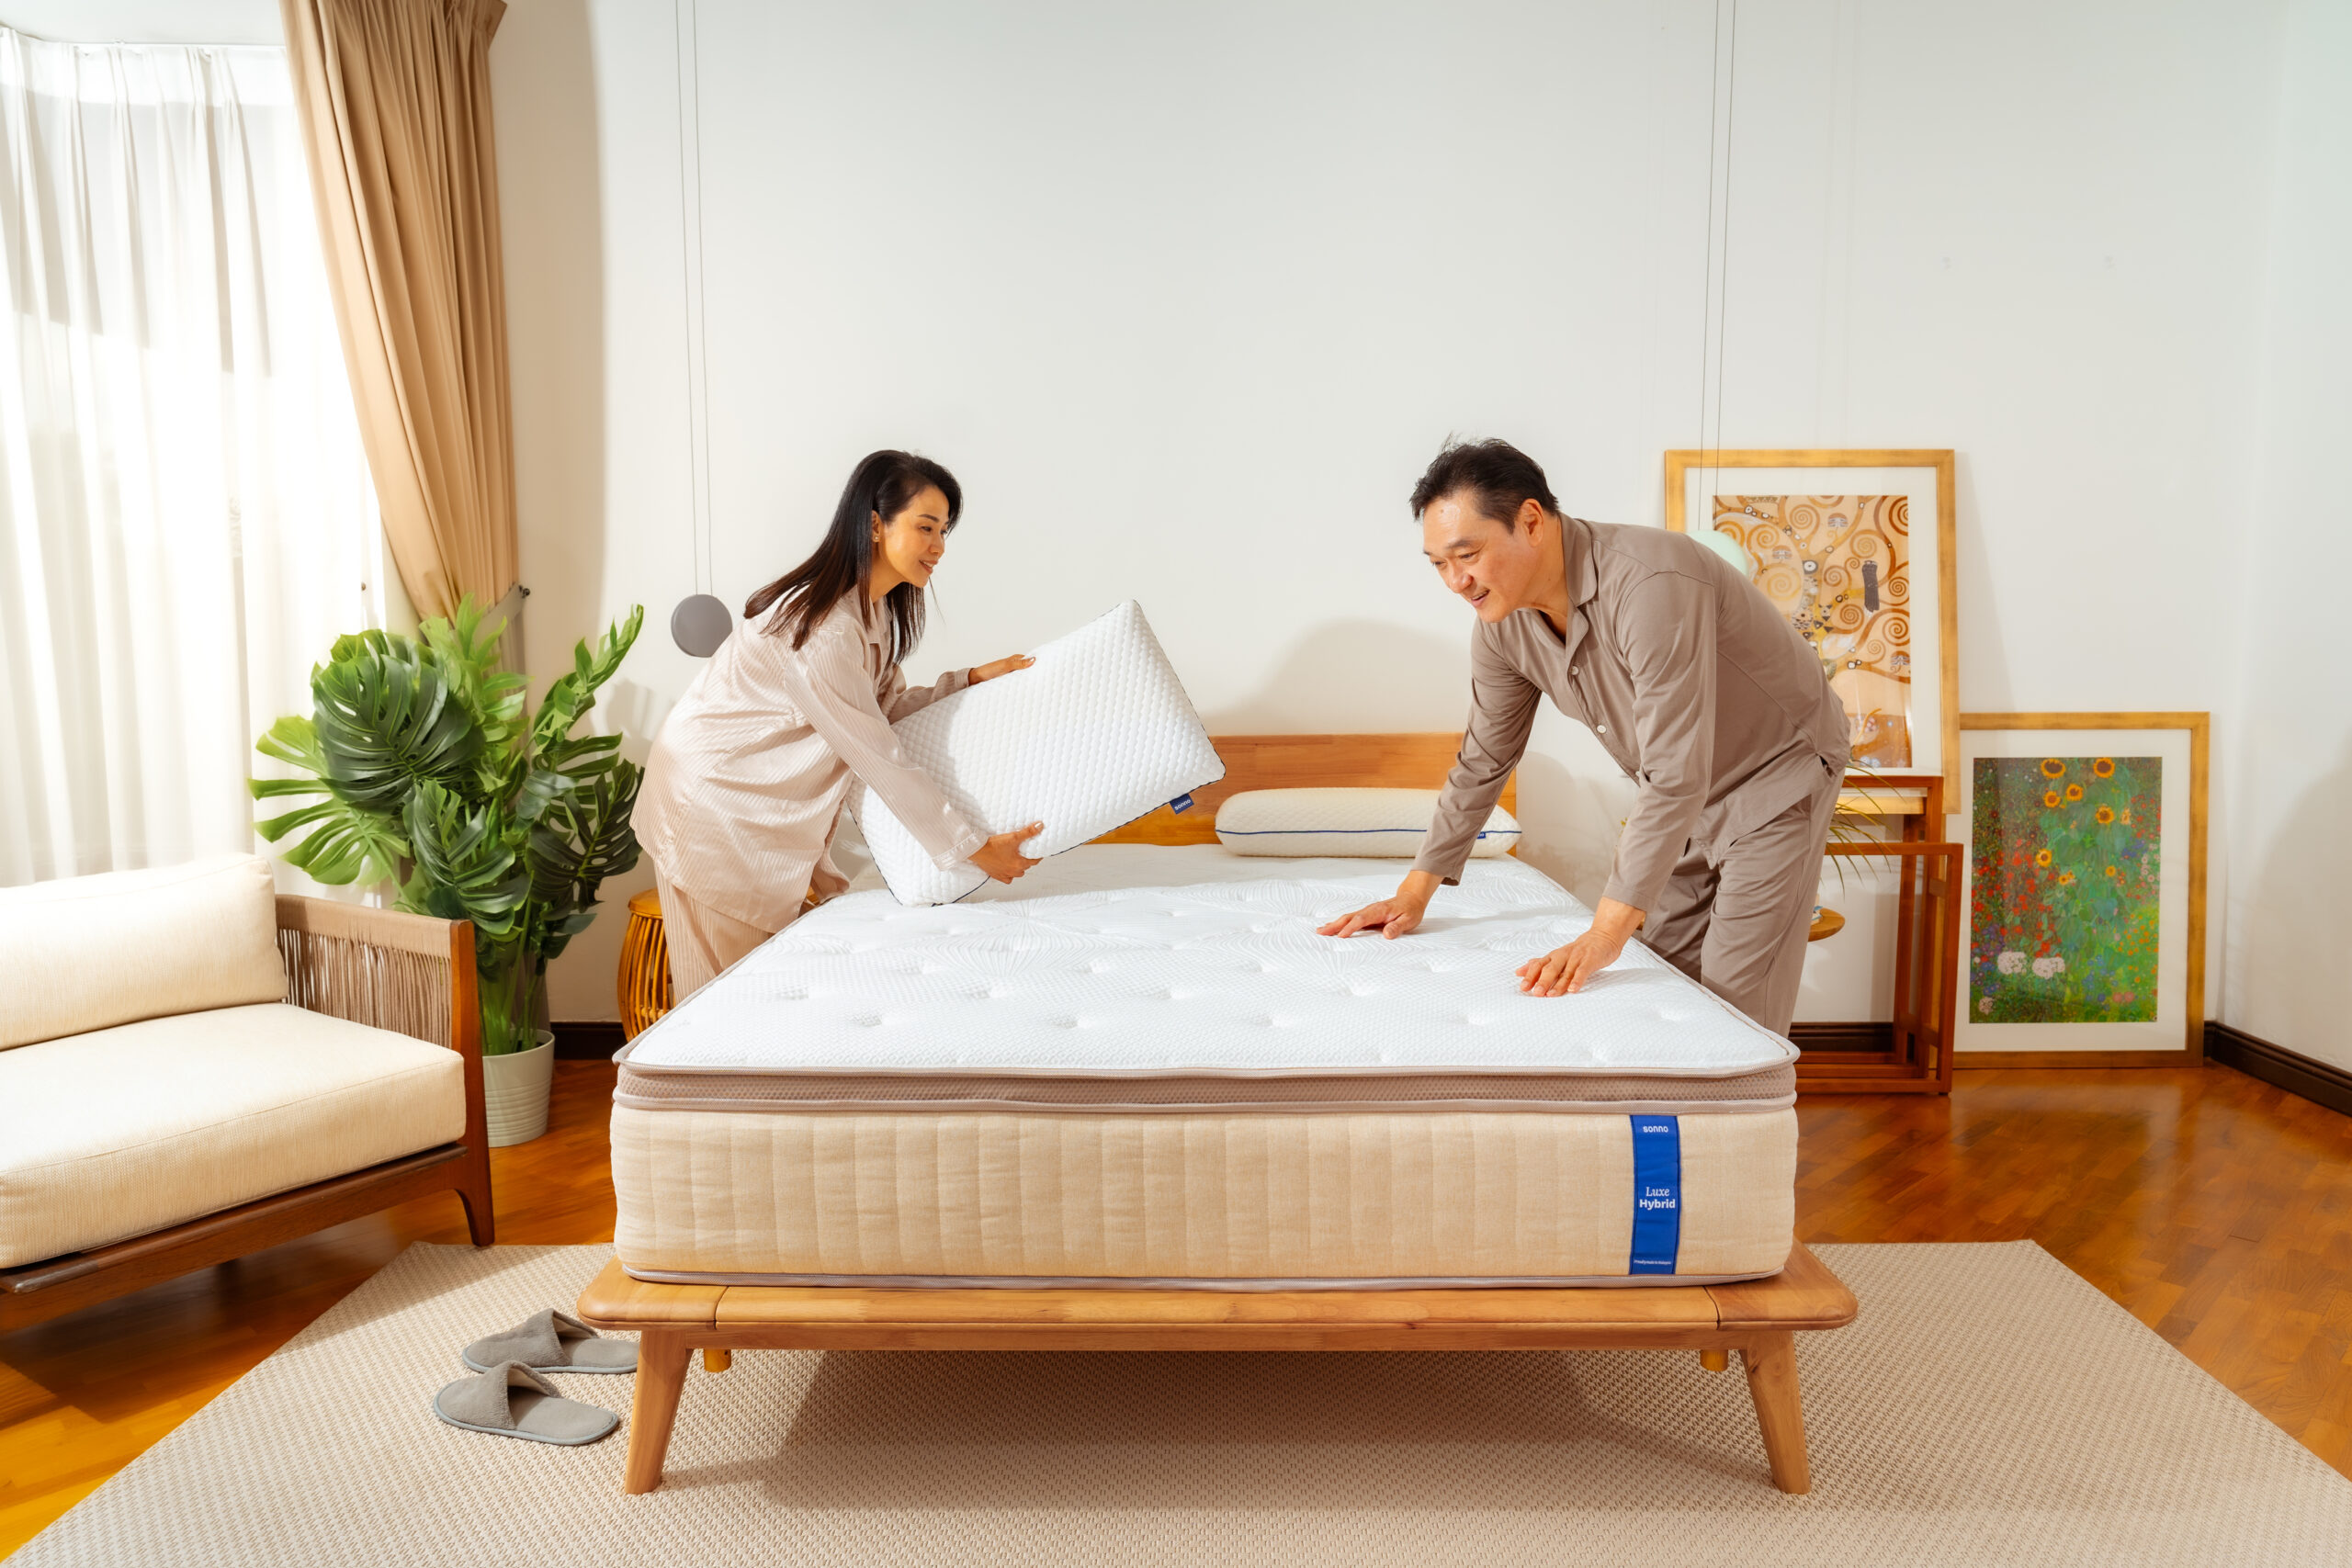 Sonno luxe hybrid mattress